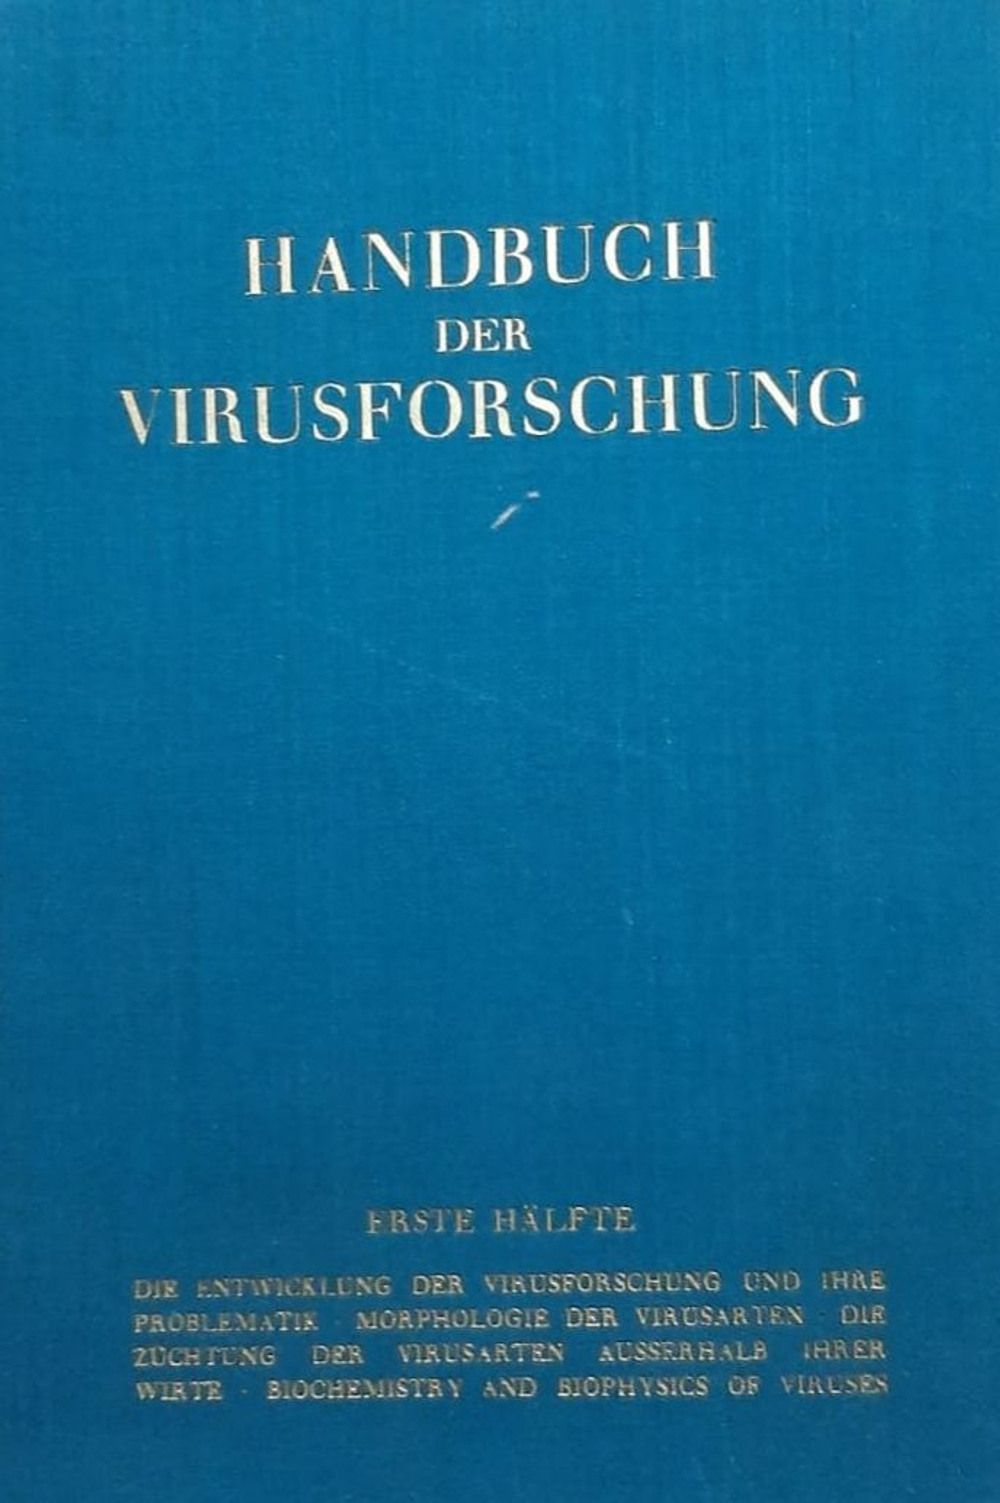 Handbuch der Virusforschung. Справочник по вирусологическим исследованиям